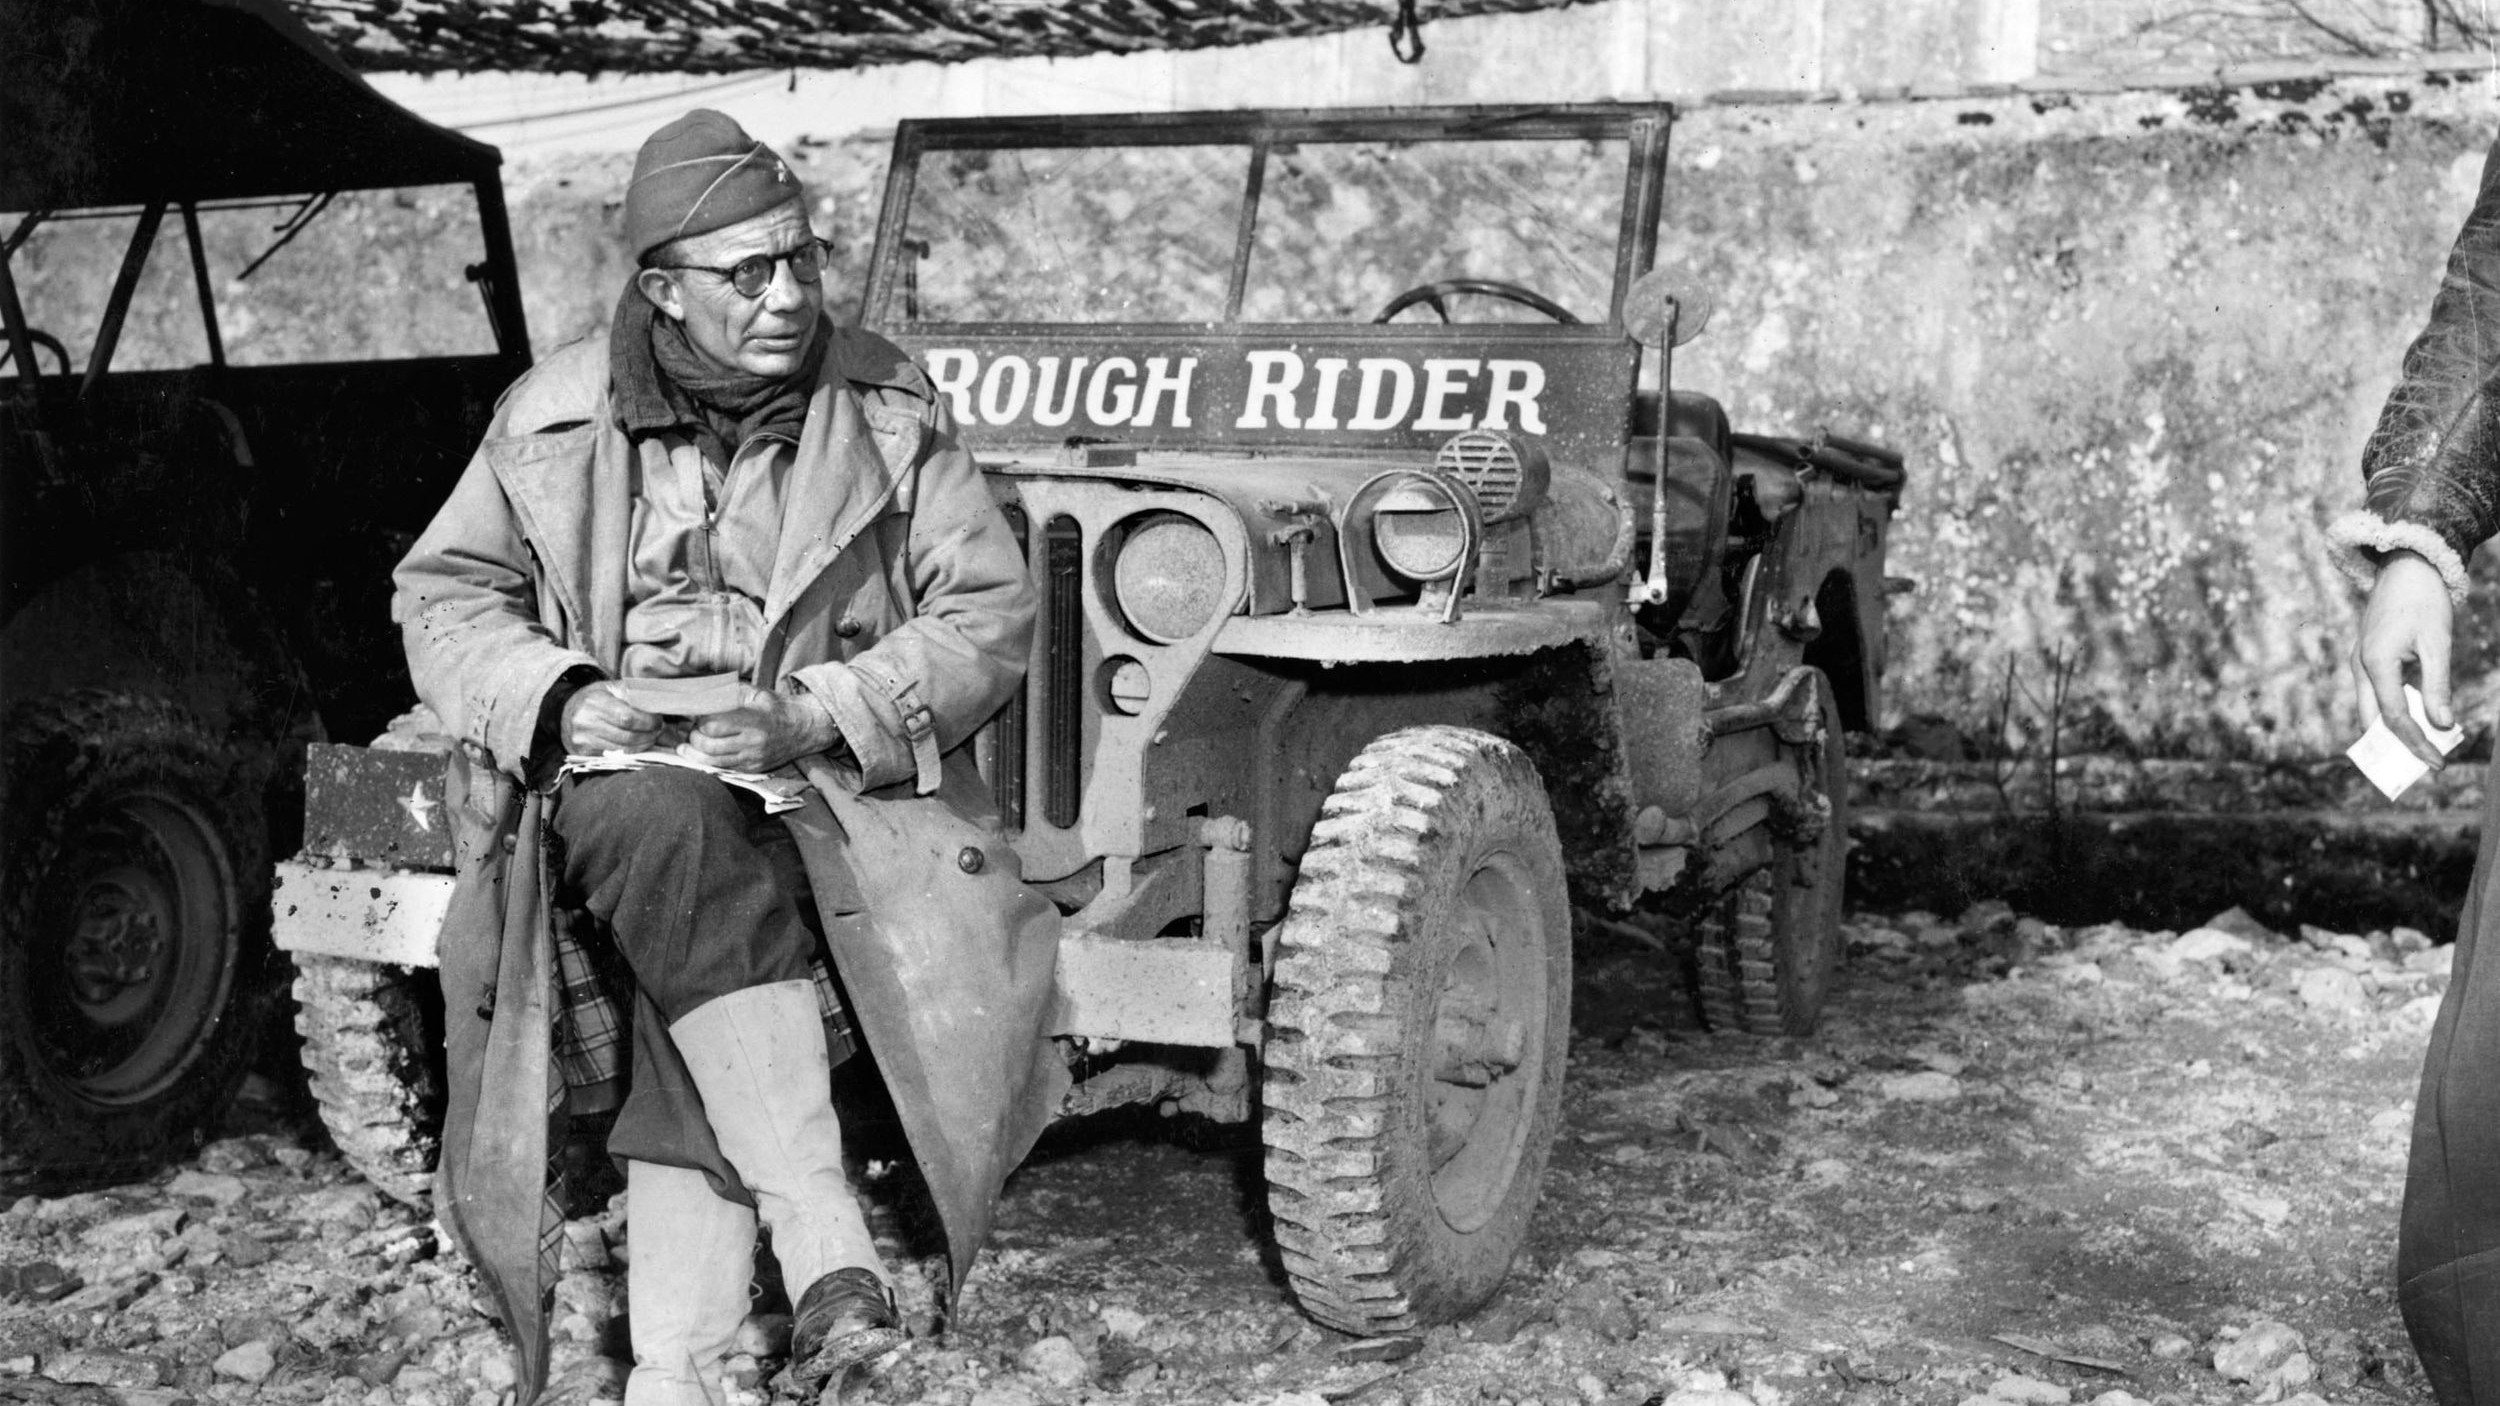 准将泰德罗斯福读取邮件服务在意大利在1944年1月。西奥多·罗斯福总统的儿子,他叫他的吉普车“粗糙的骑士”纪念他已故父亲和他利用在美西战争期间。